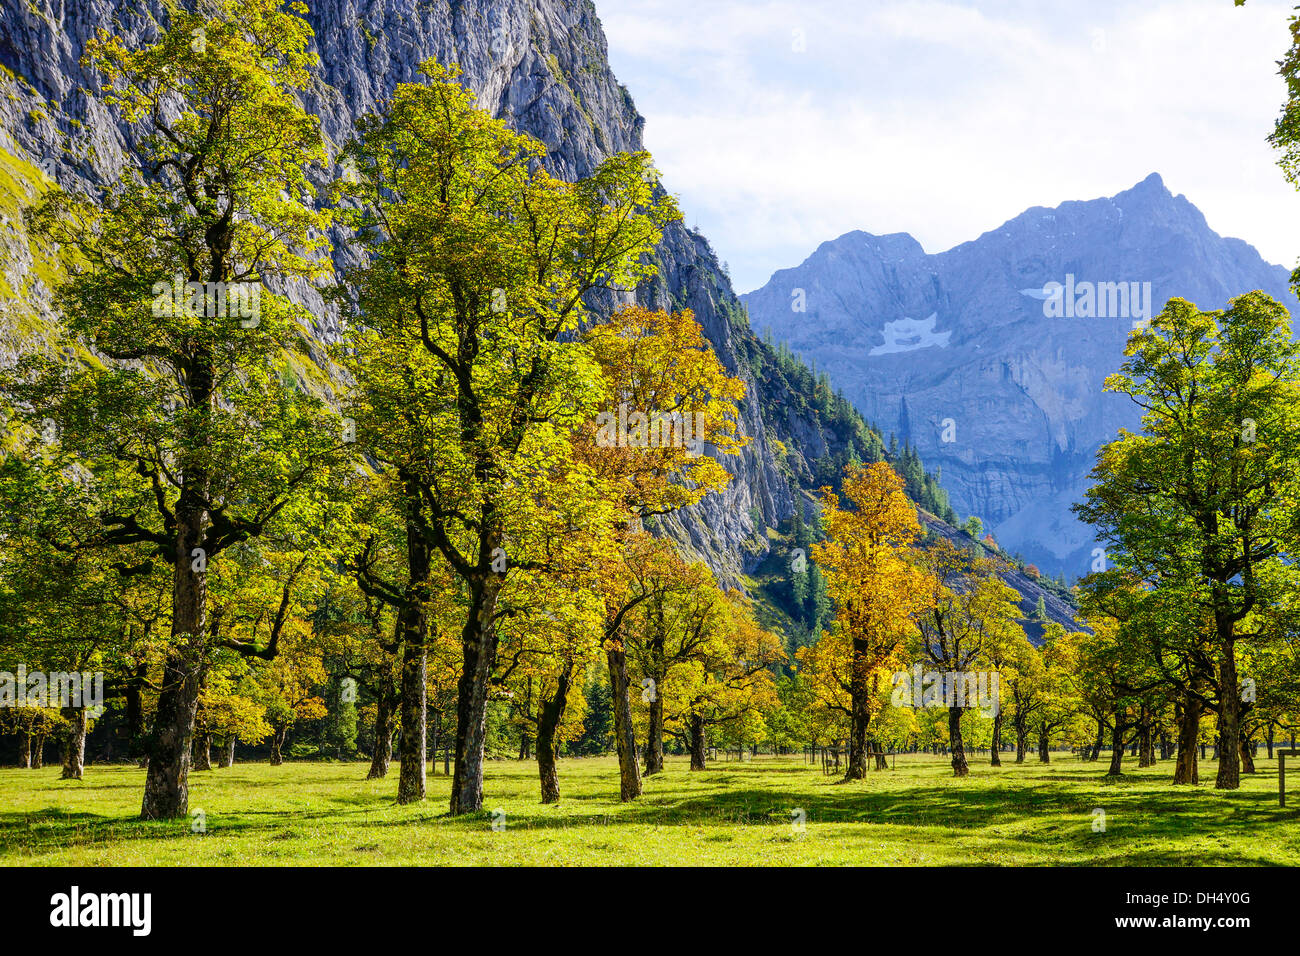 Grosser Ahornboden, Karwendel-Gebirge, Tirol, Austria, Europe Stockfoto